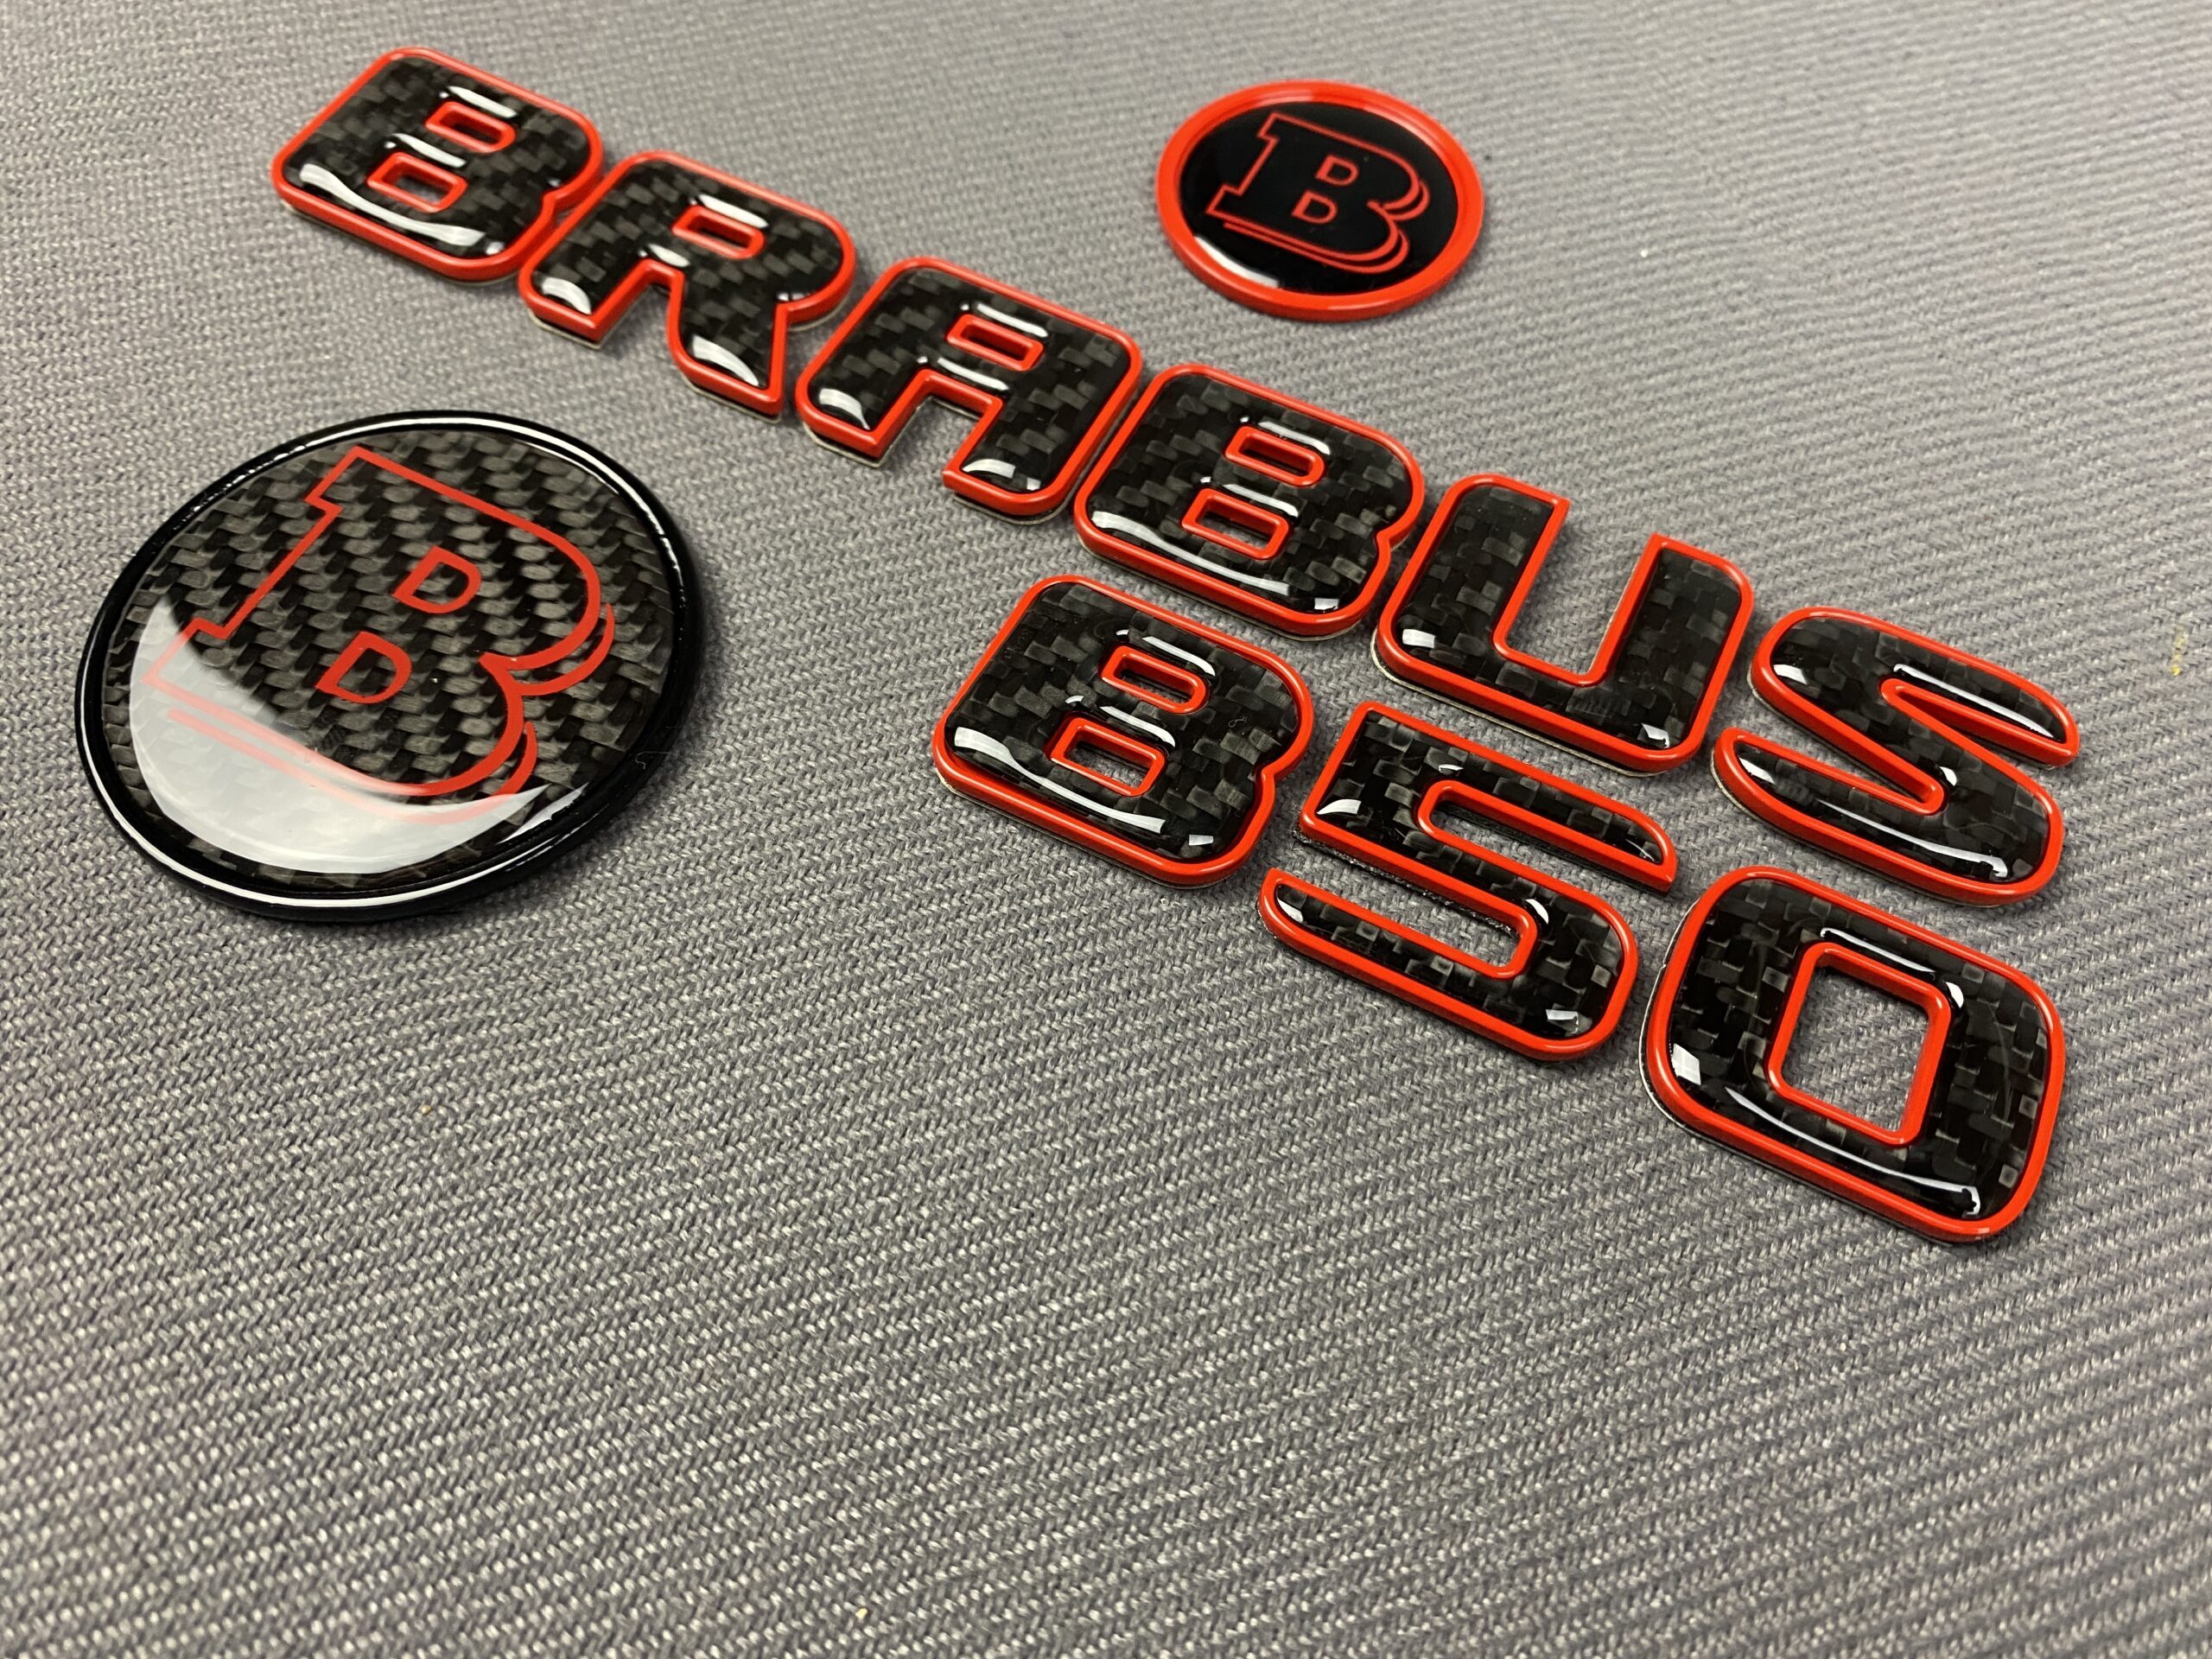 2-component GREY metal carbon Brabus badge logo emblem 55mm for